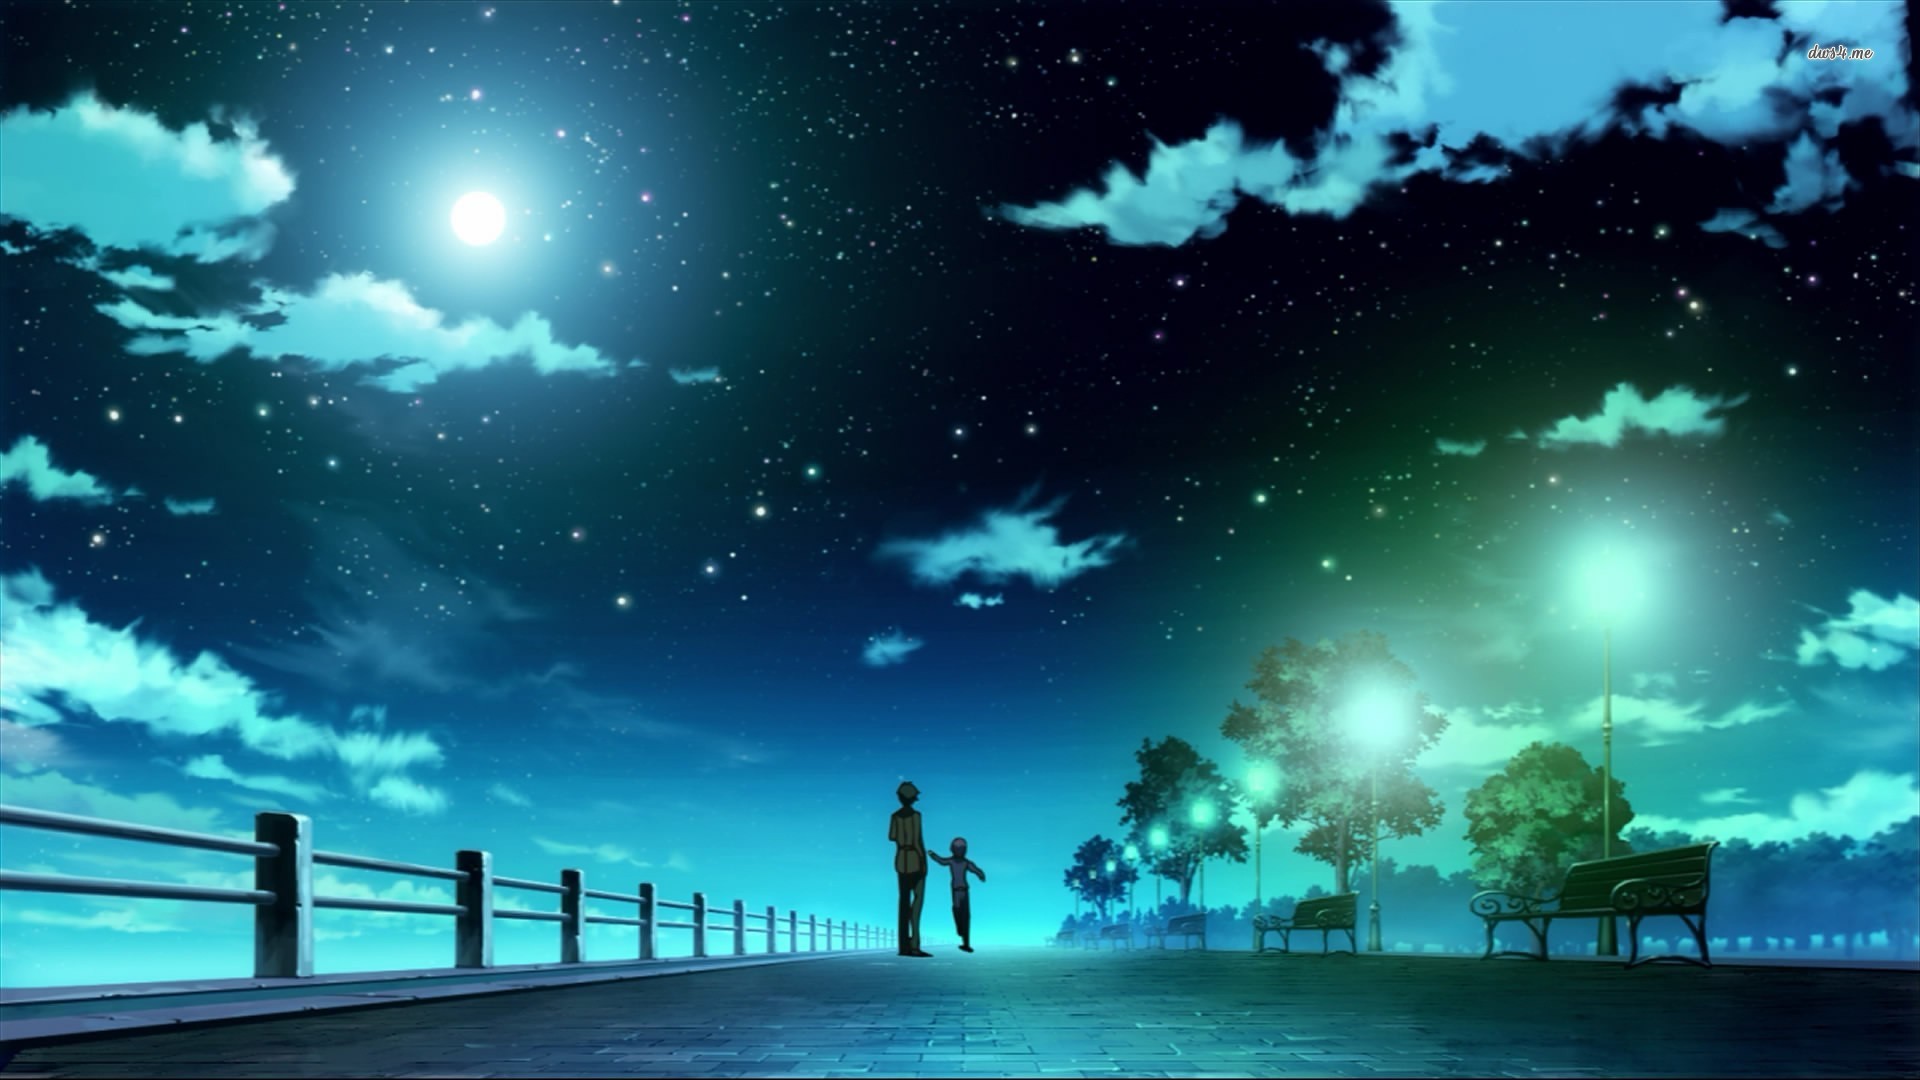 Bạn đang tìm kiếm những bức hình anime lãng mạn và đầy sức hút? Night Sky Anime Desktop Wallpapers là sự lựa chọn hoàn hảo cho bạn! Với những hình ảnh đẹp và sống động, tuyệt vời cho các thiết bị máy tính của bạn. Bạn sẽ cảm nhận được bầu không khí huyền ảo của đêm và thưởng thức tuyệt phẩm của Night Sky Anime Desktop Wallpapers.